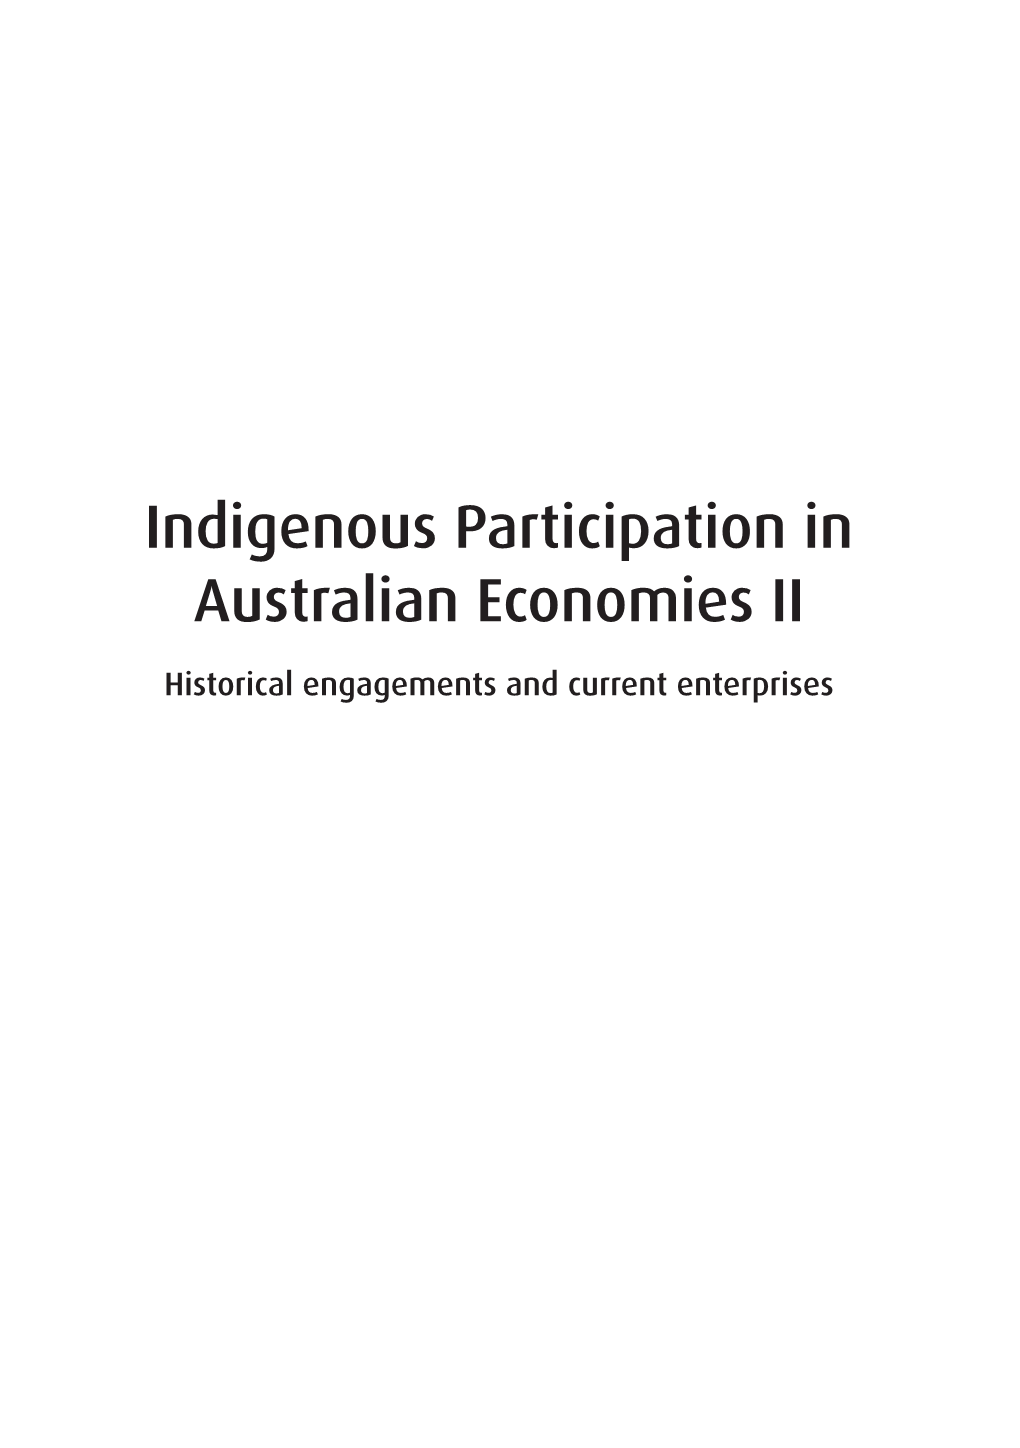 Indigenous Participation in Australian Economies II